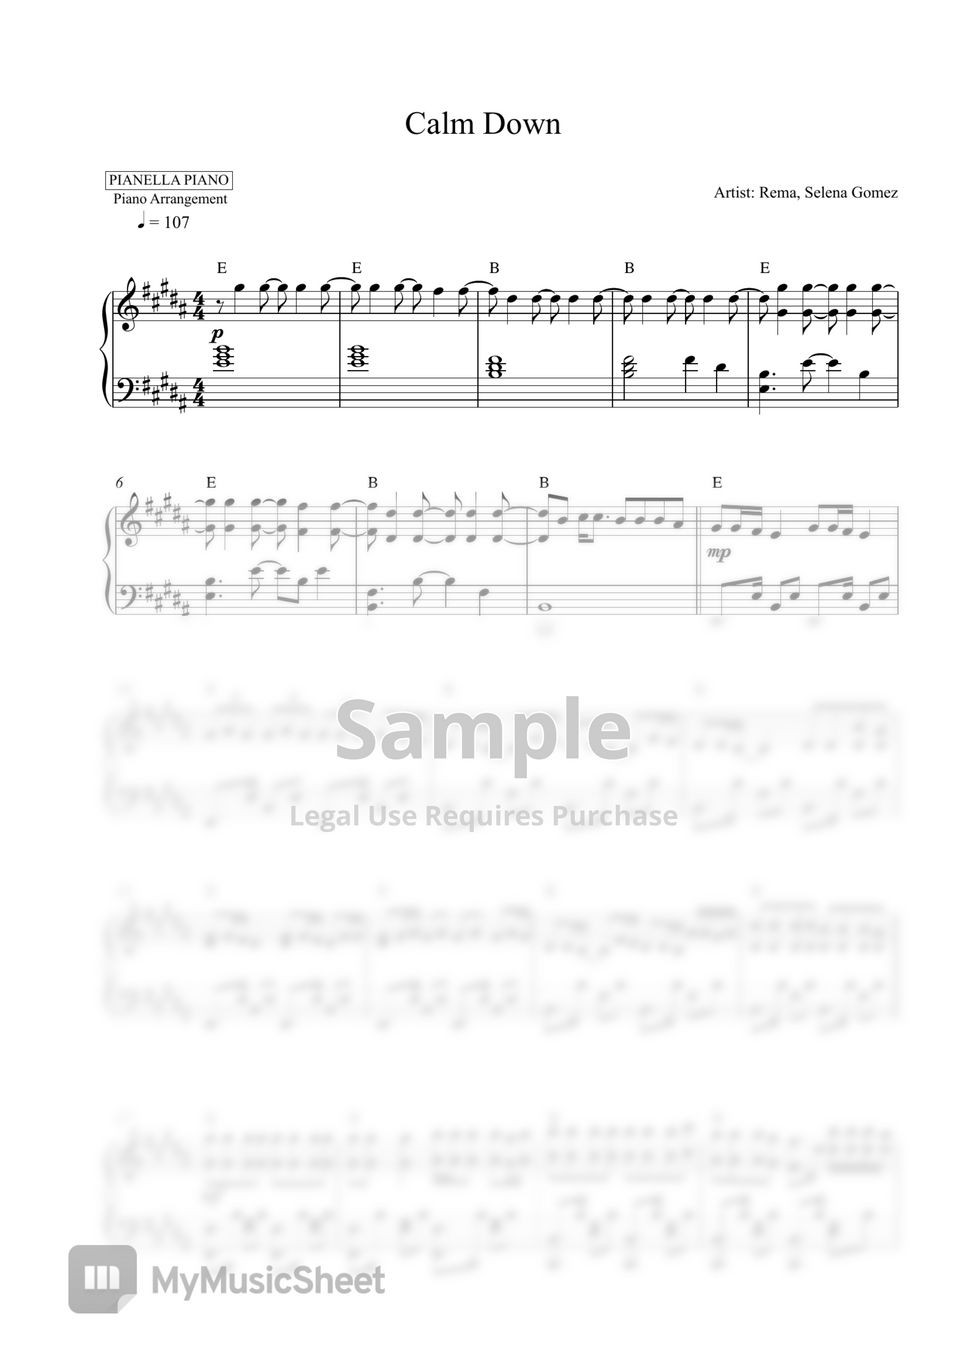 Rema, Selena Gomez - Calm Down (Piano Sheet) by Pianella Piano